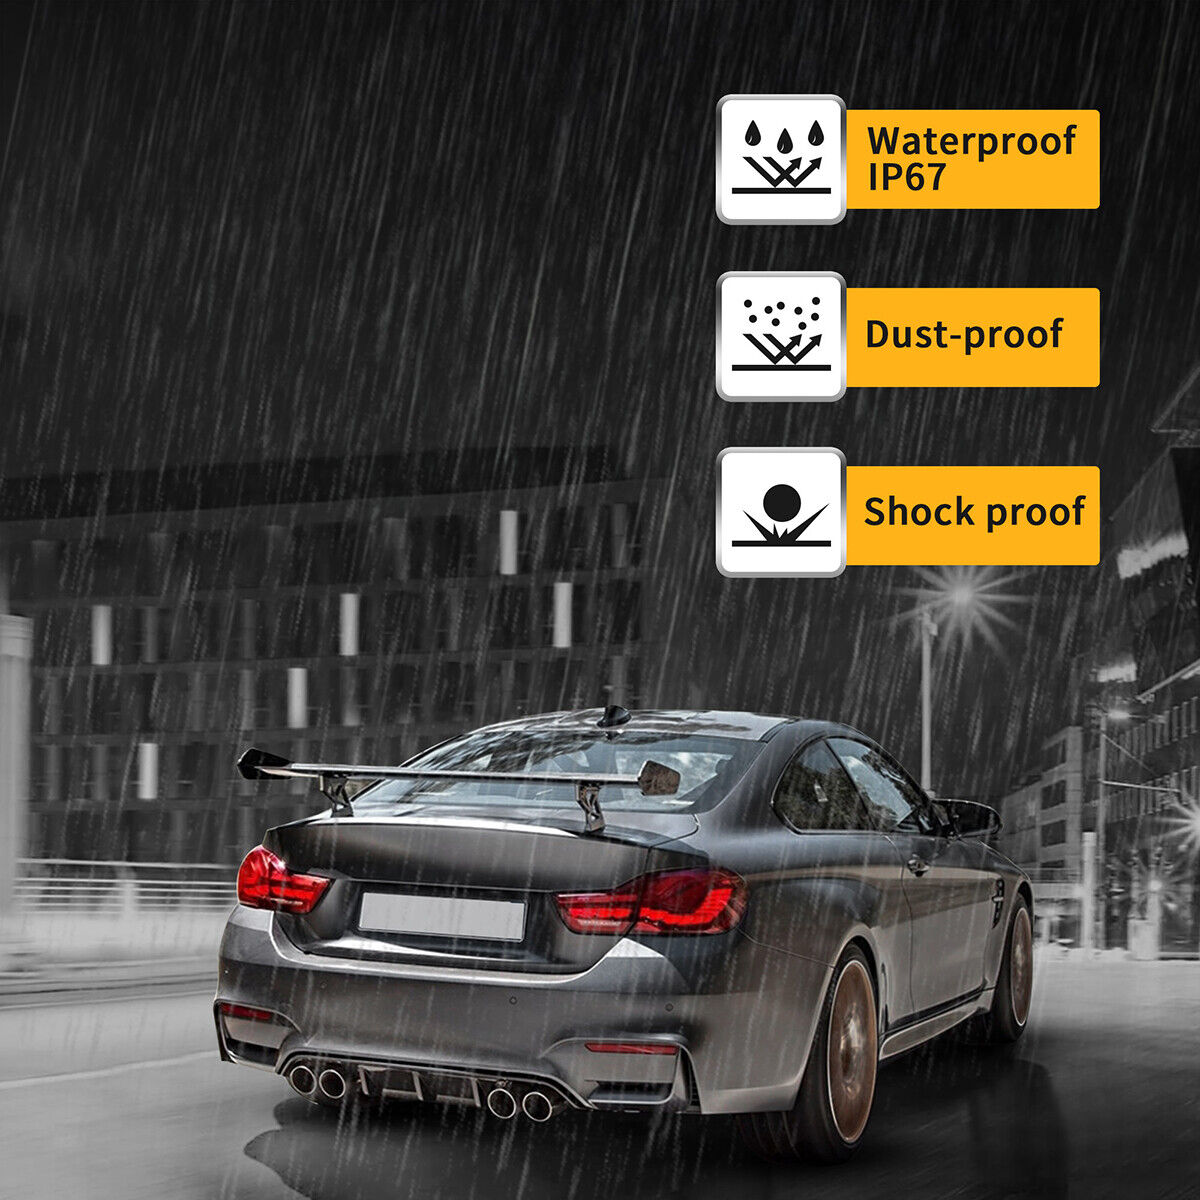 NEU LED Rückleuchten Mit E Mark Heckleuchten für BMW 4er F32 F33 F36 F82 F83 M4 GTS 2014-2020